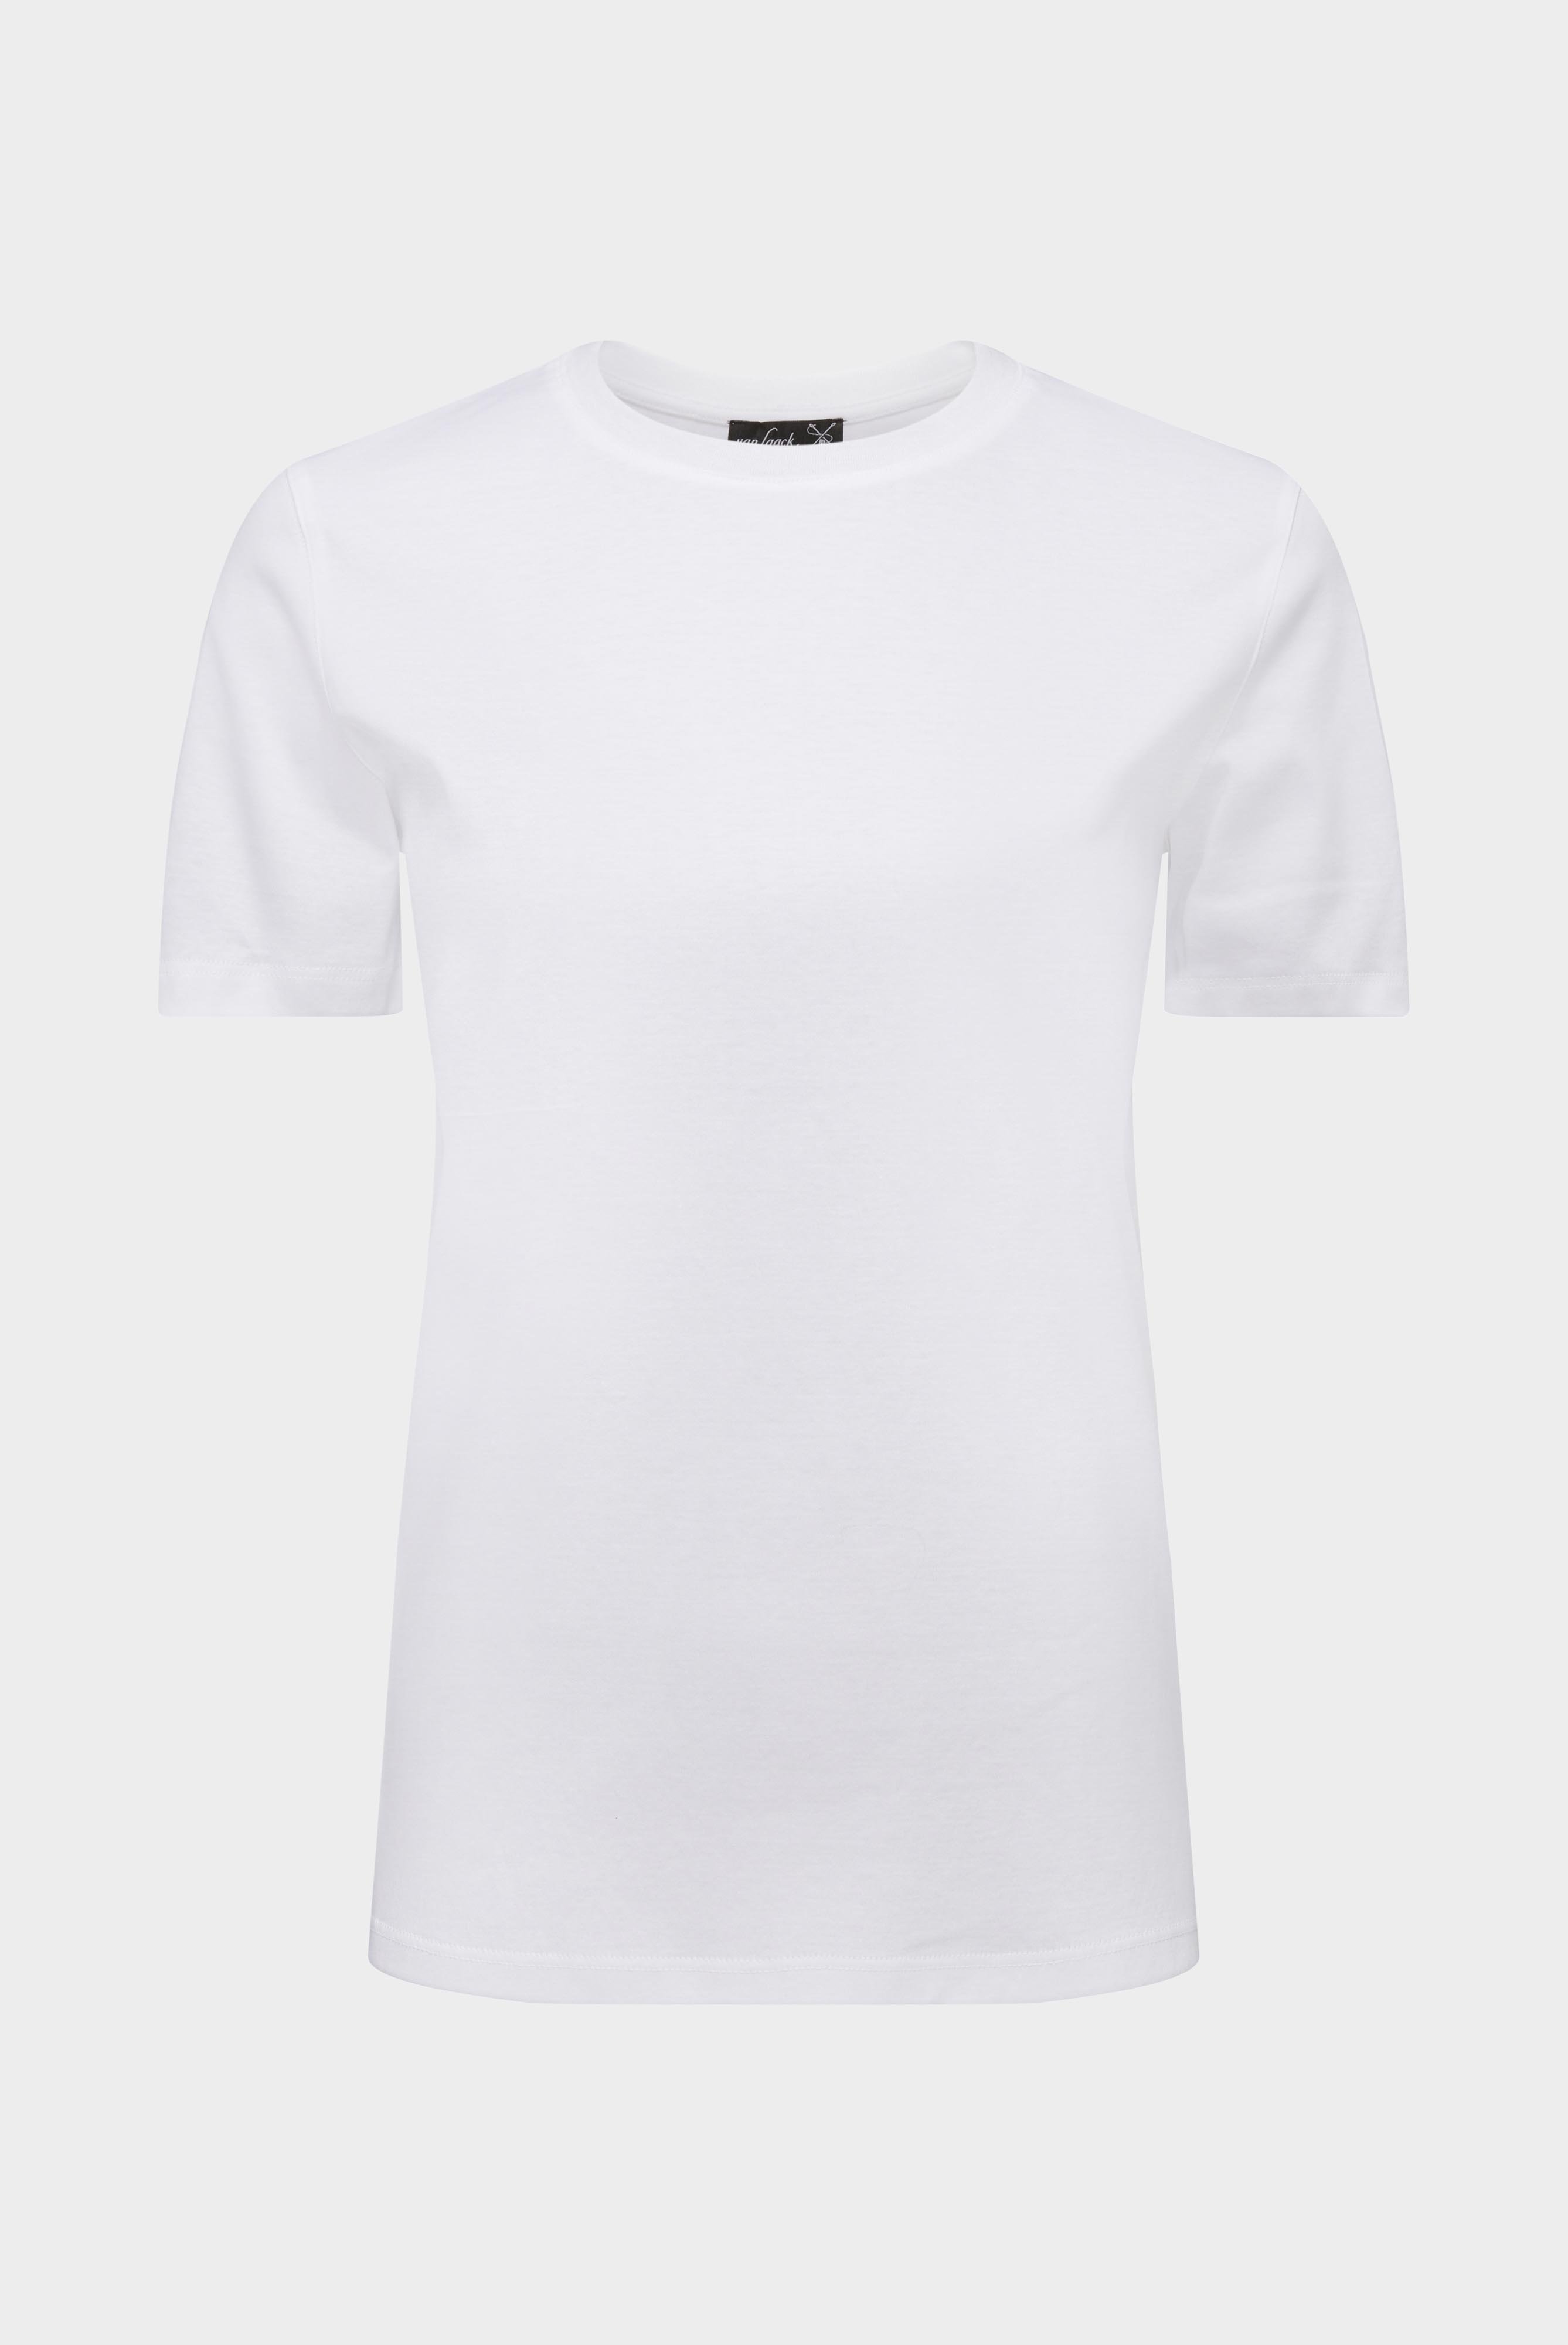 Tops & T-Shirts+Jersey T-Shirt+05.6384.18.180031.000.38